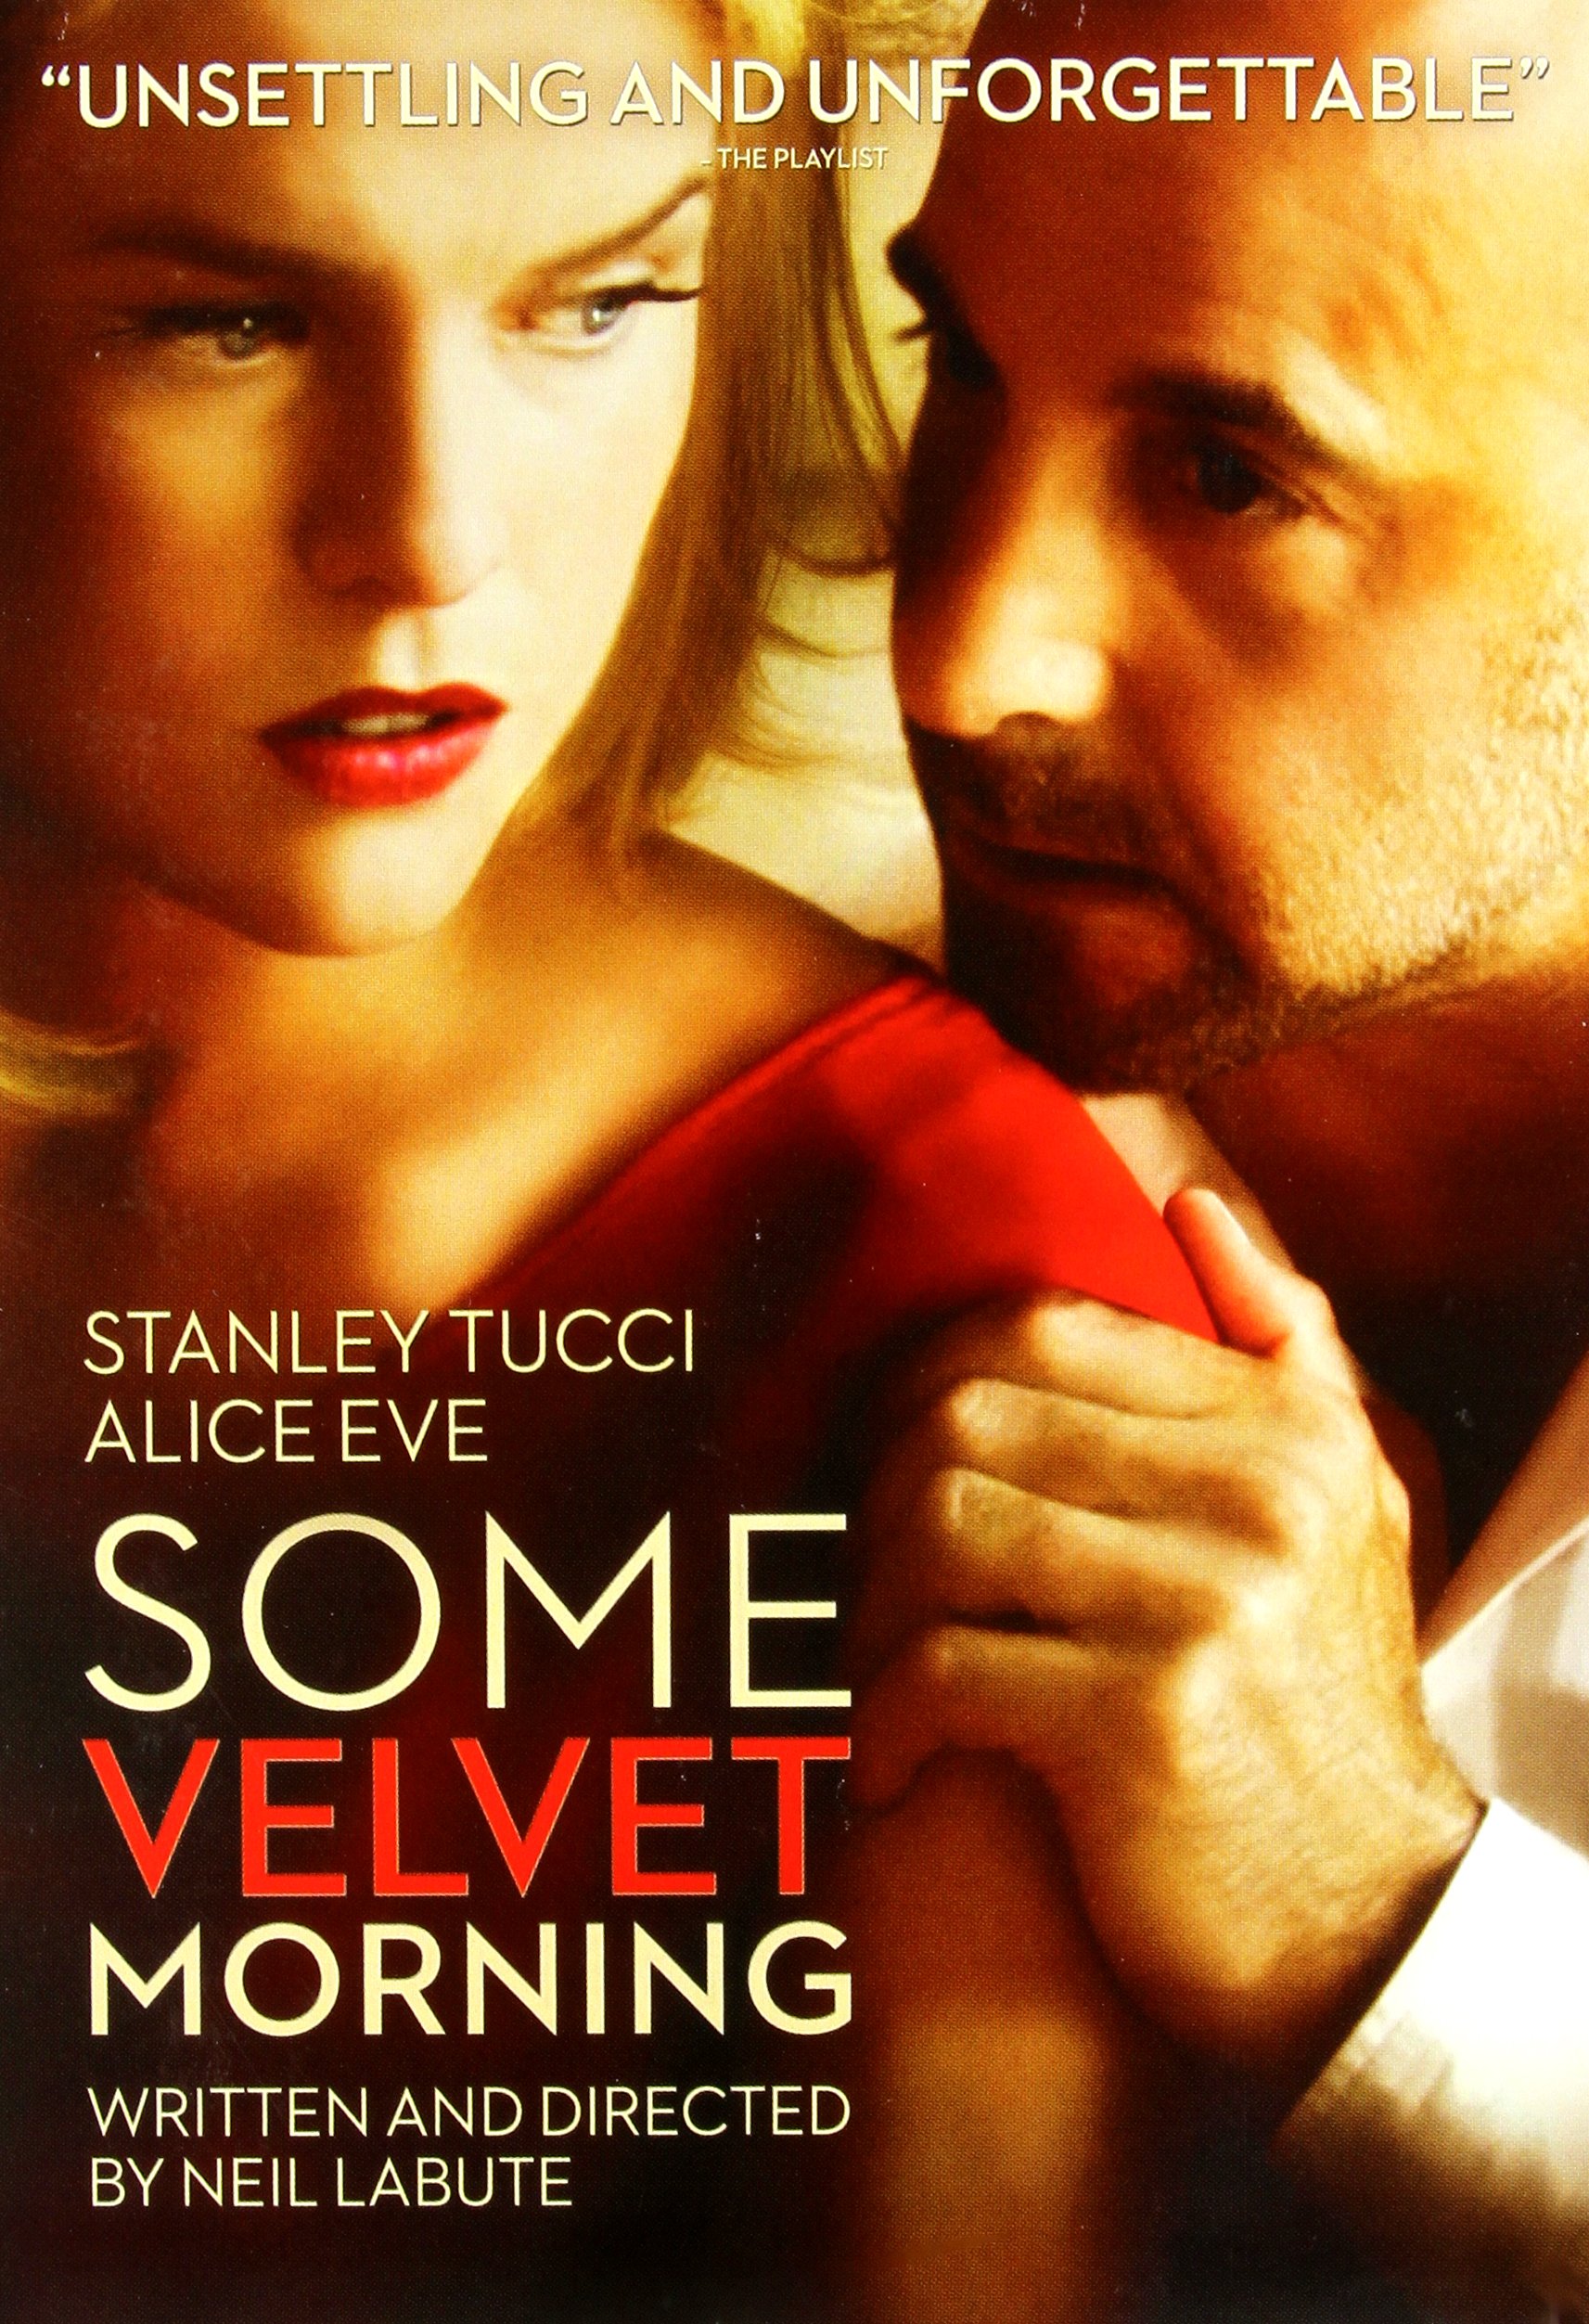 Some Velvet Morning DVD Release Date June 24, 20141713 x 2505